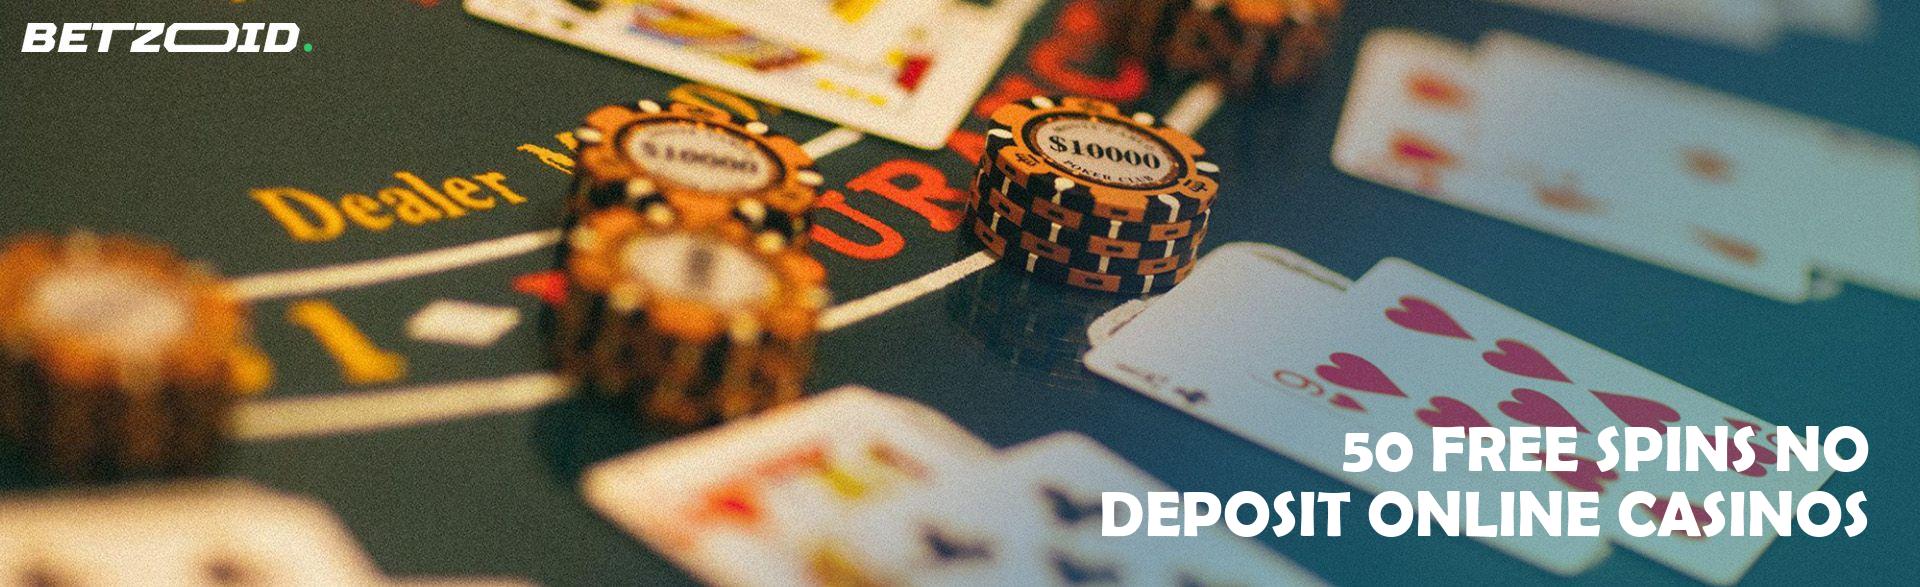 50 Free Spins No Deposit Online Casinos.